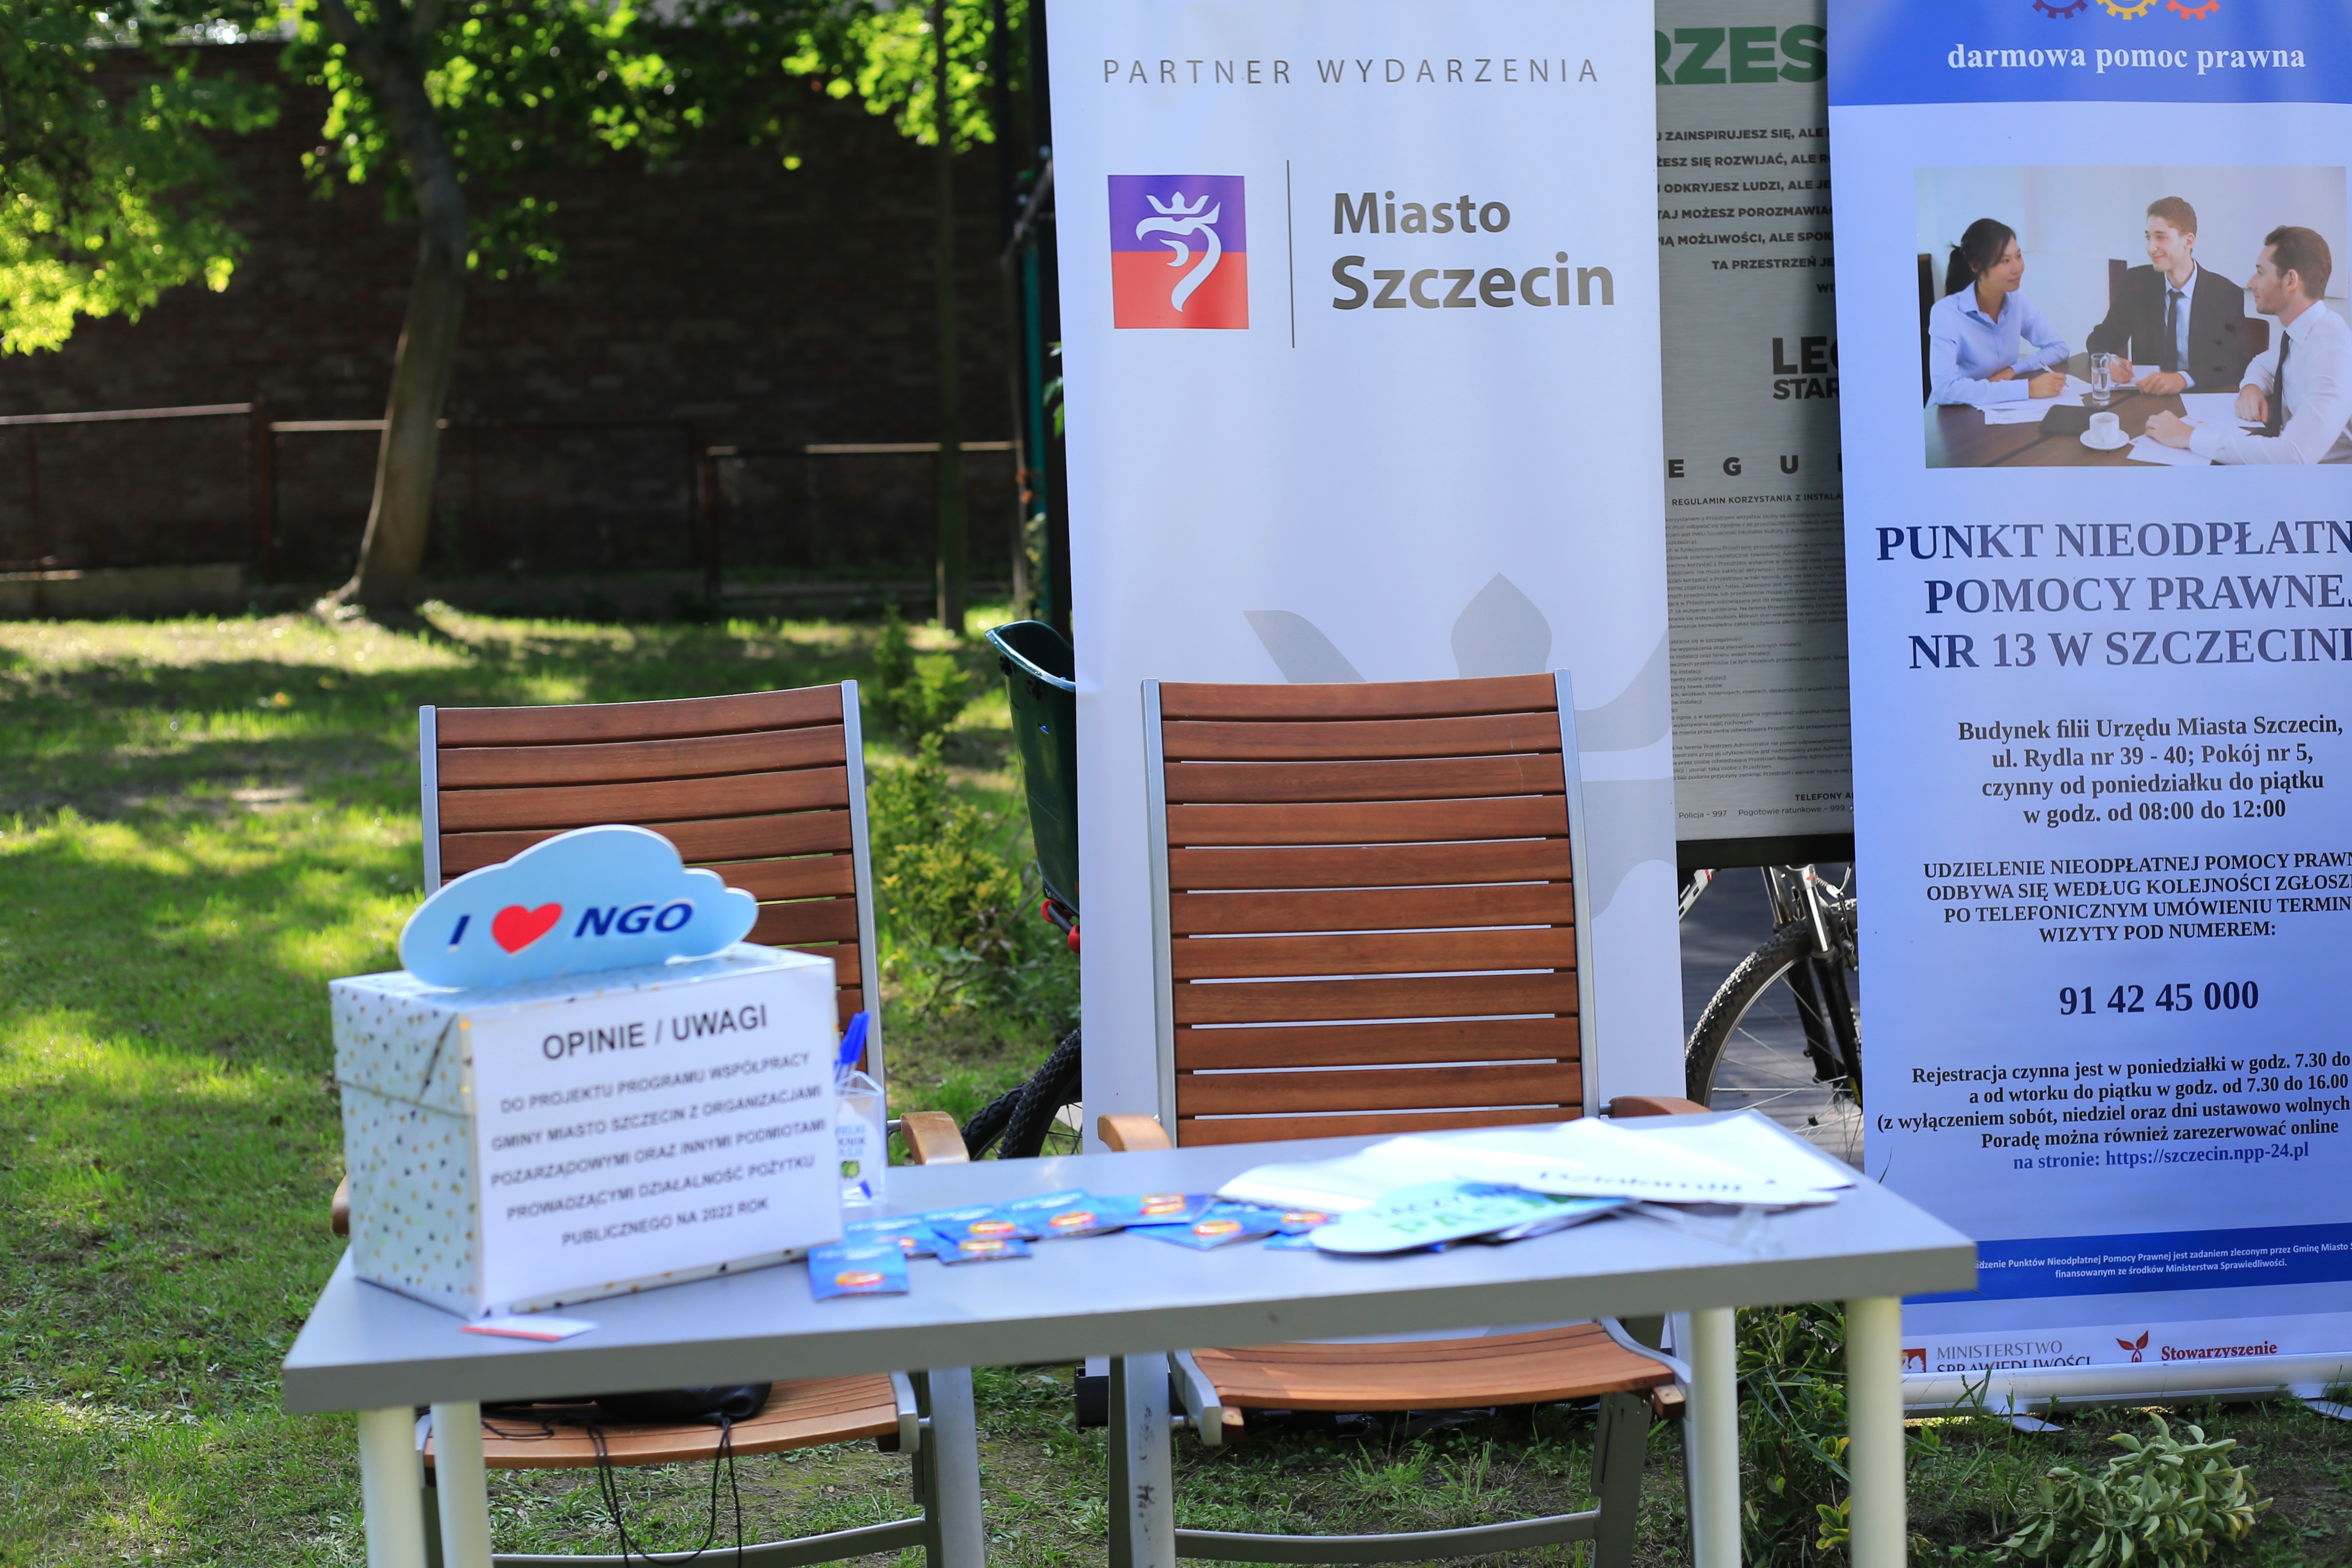 Stolik w parku, na którym znajduje się urna z napisem "opinie, uwagi". Na urnie znaczek i love NGO. W tle roll-upy Miasta szczecin oraz Punktu Nieodpłatnej Pomocy Prawnej.